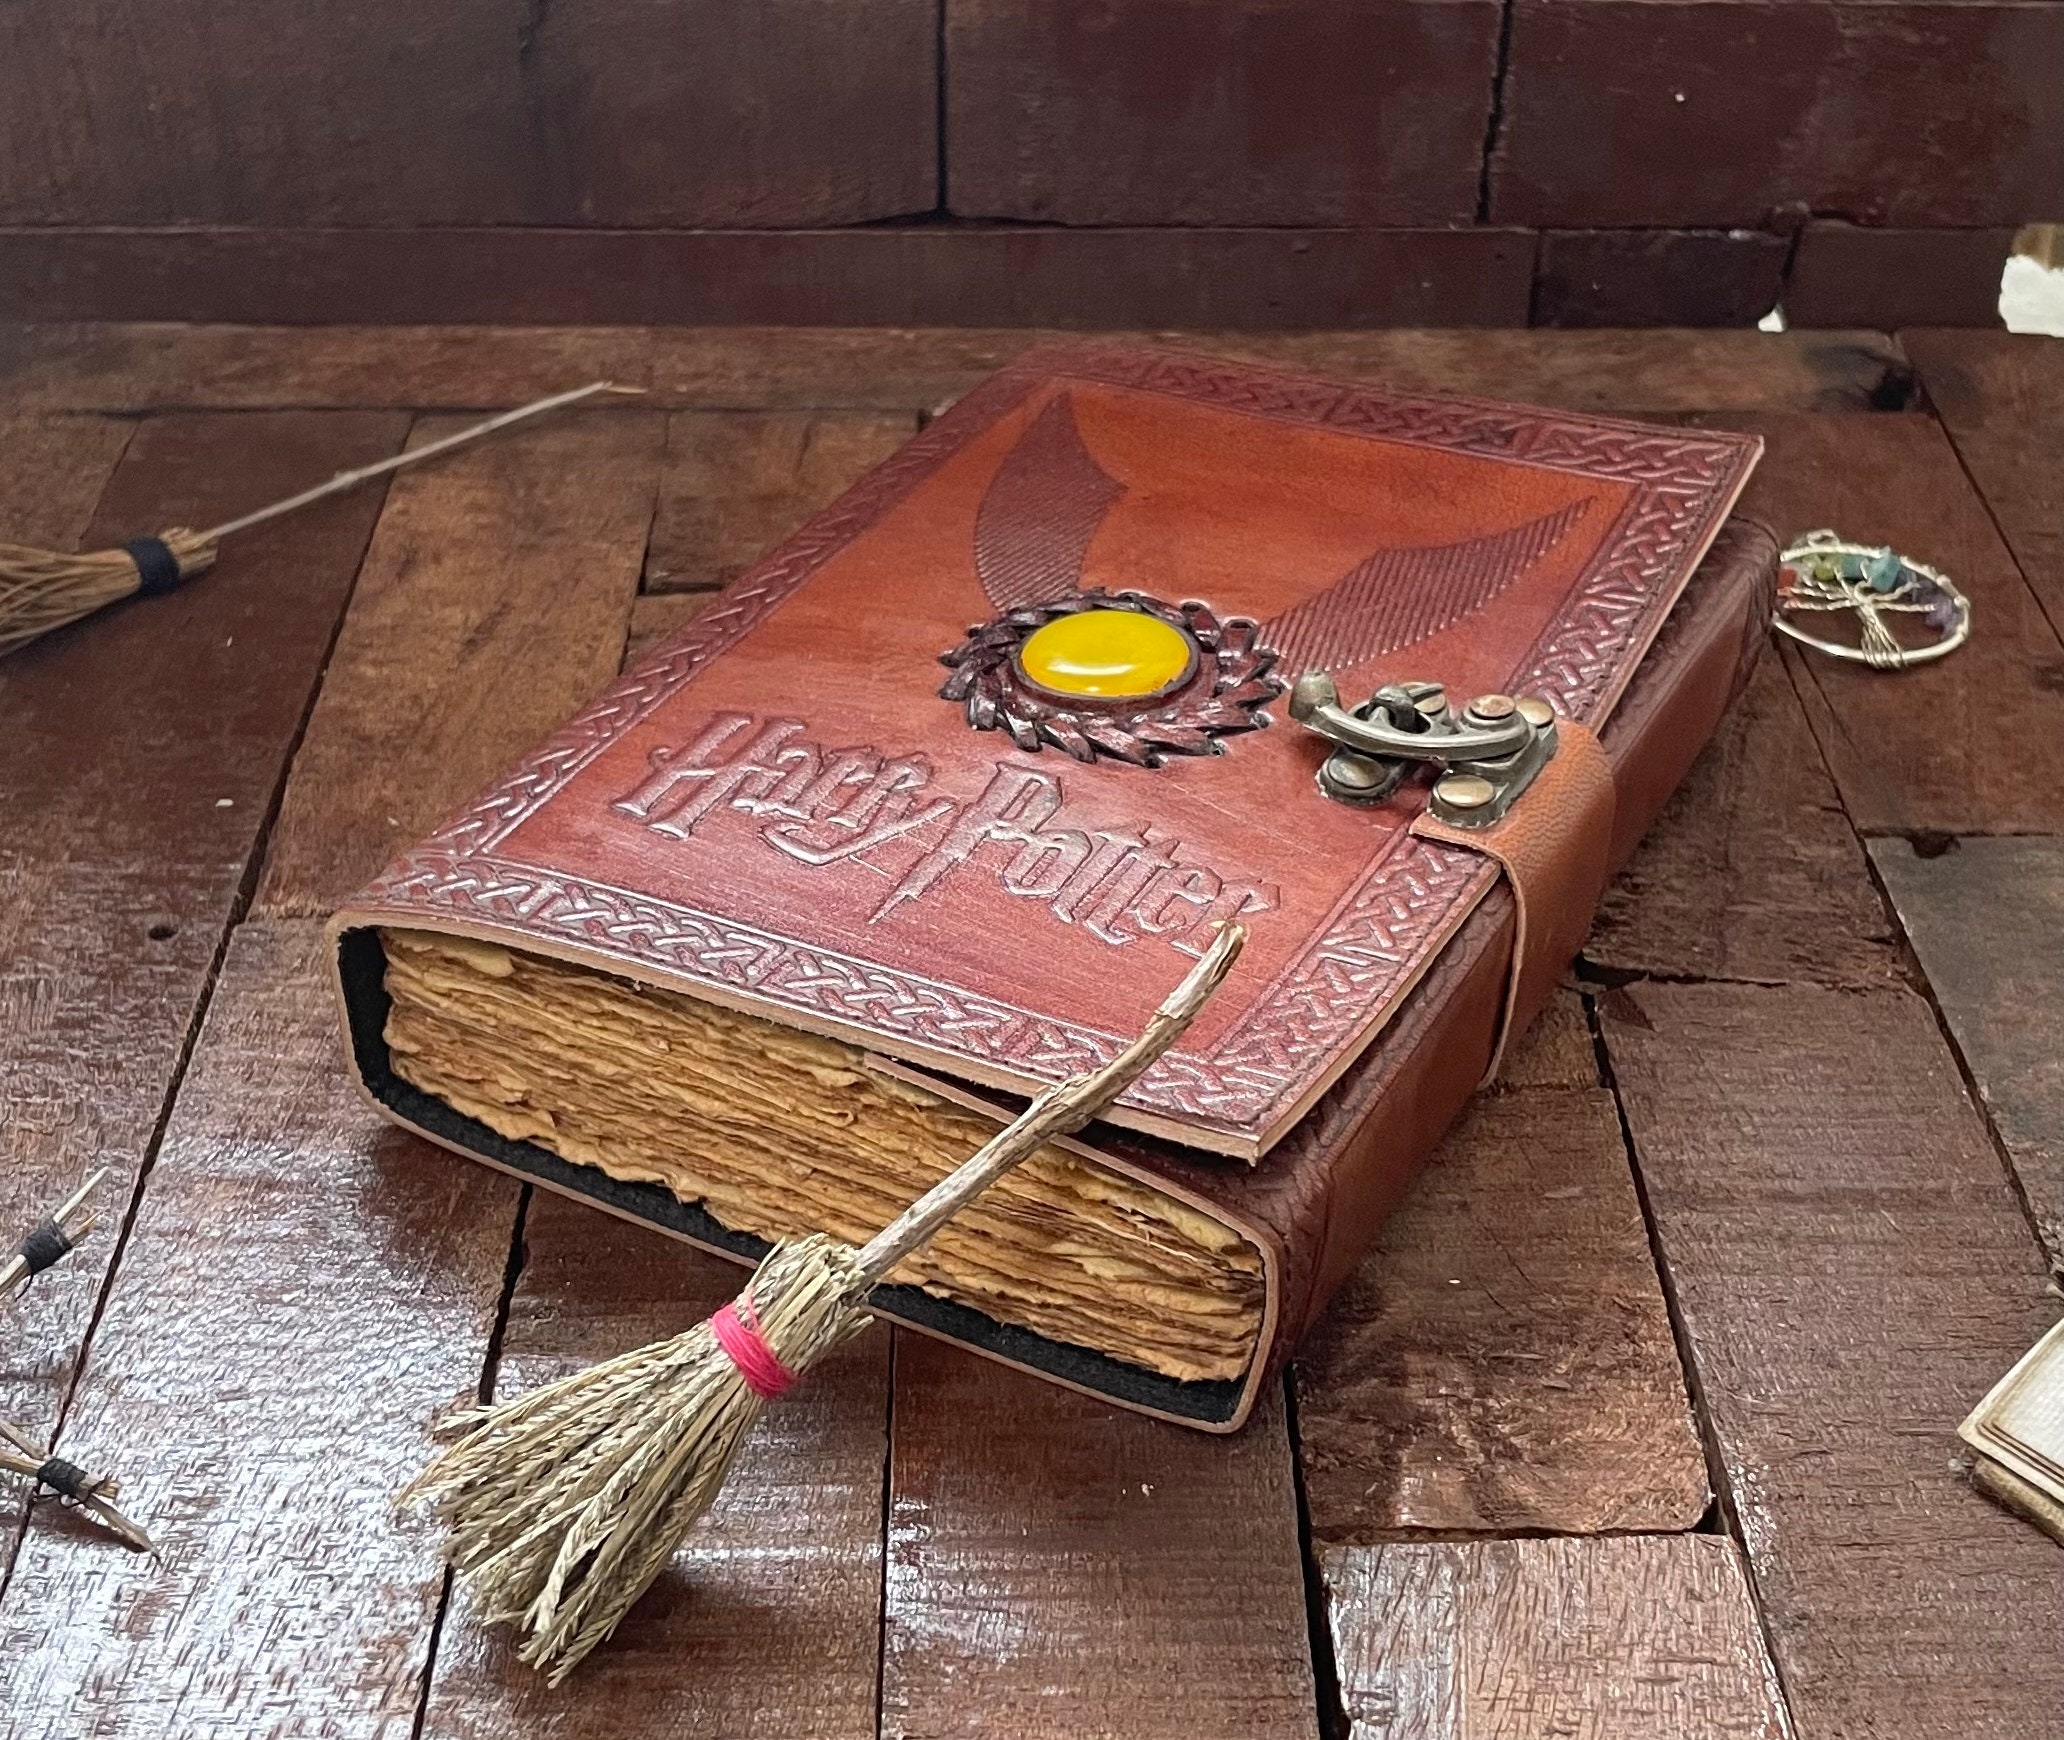 Journal - HP Wizard Magic A5 PU Journal Notebook